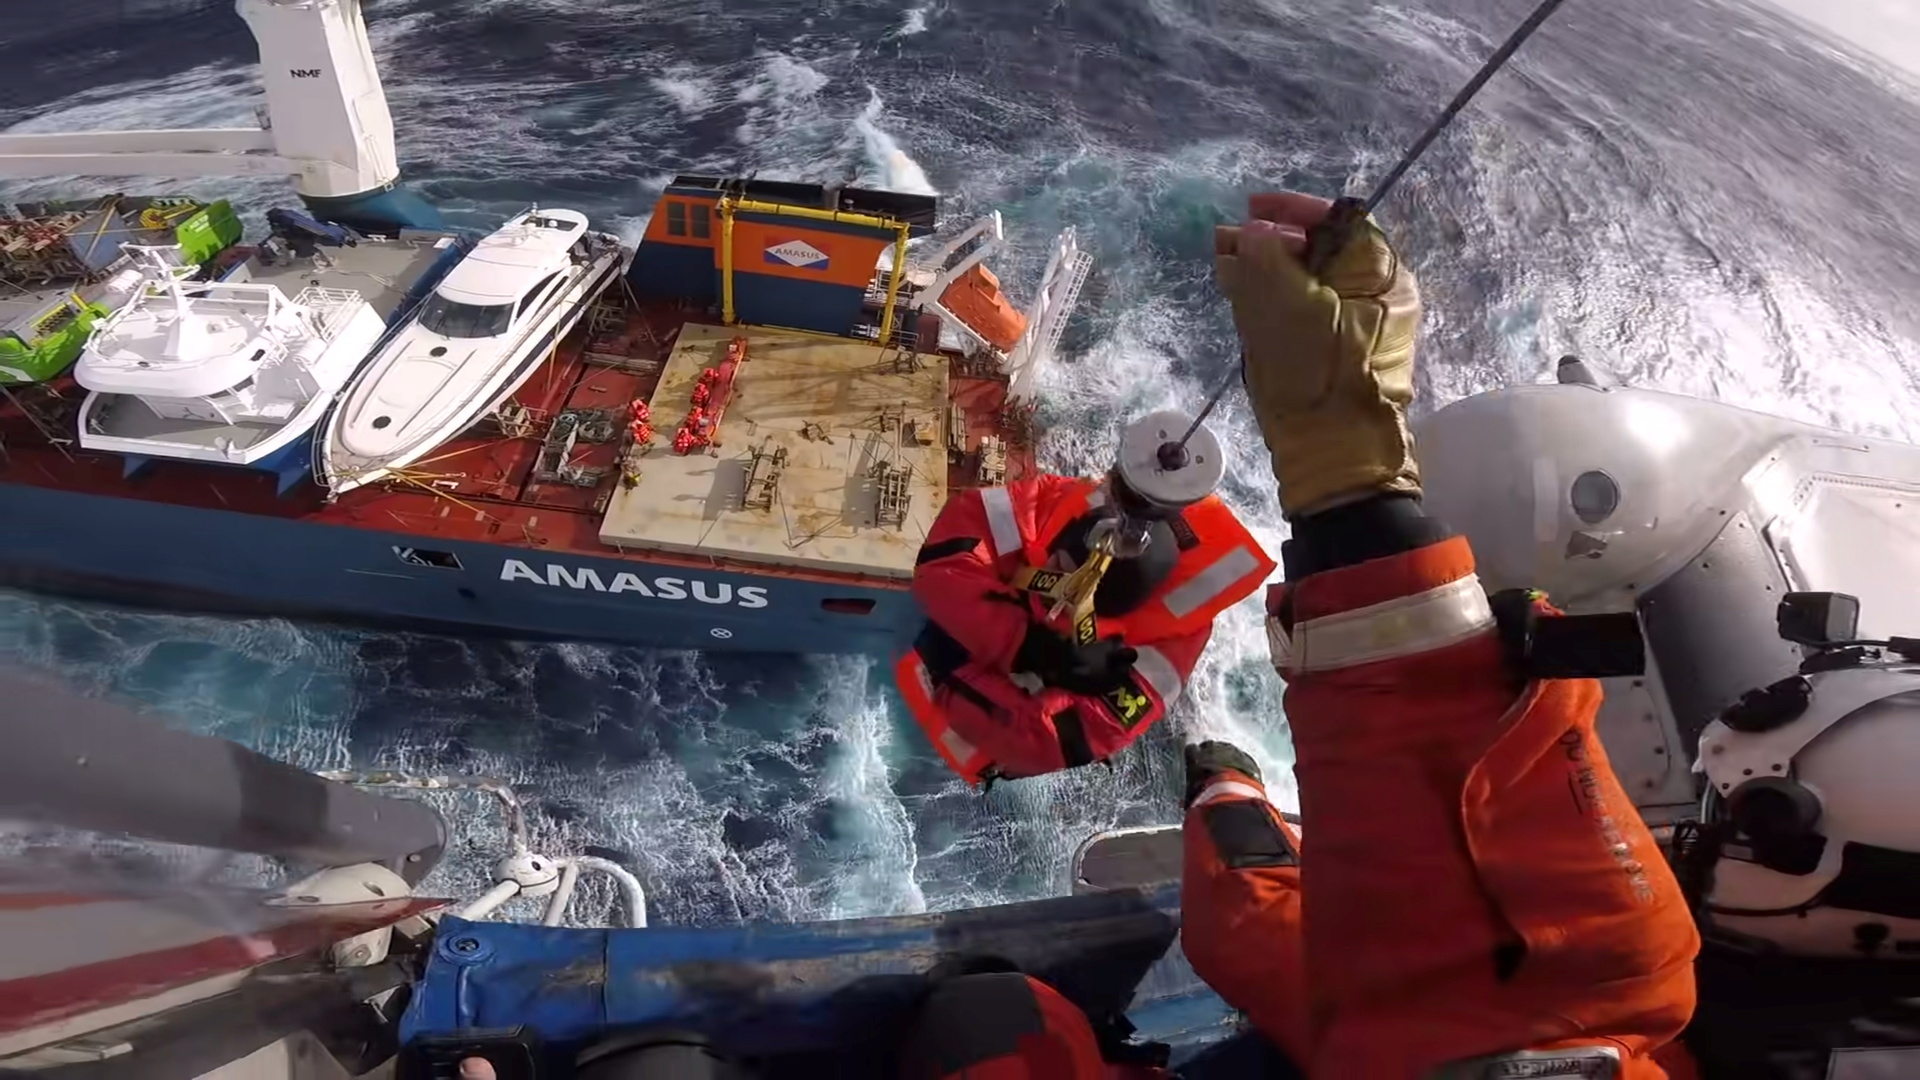 تأمين سفينة شحن هولندية بعد محاولة إنقاذ في المياه الهائجة (صور+فيديو)